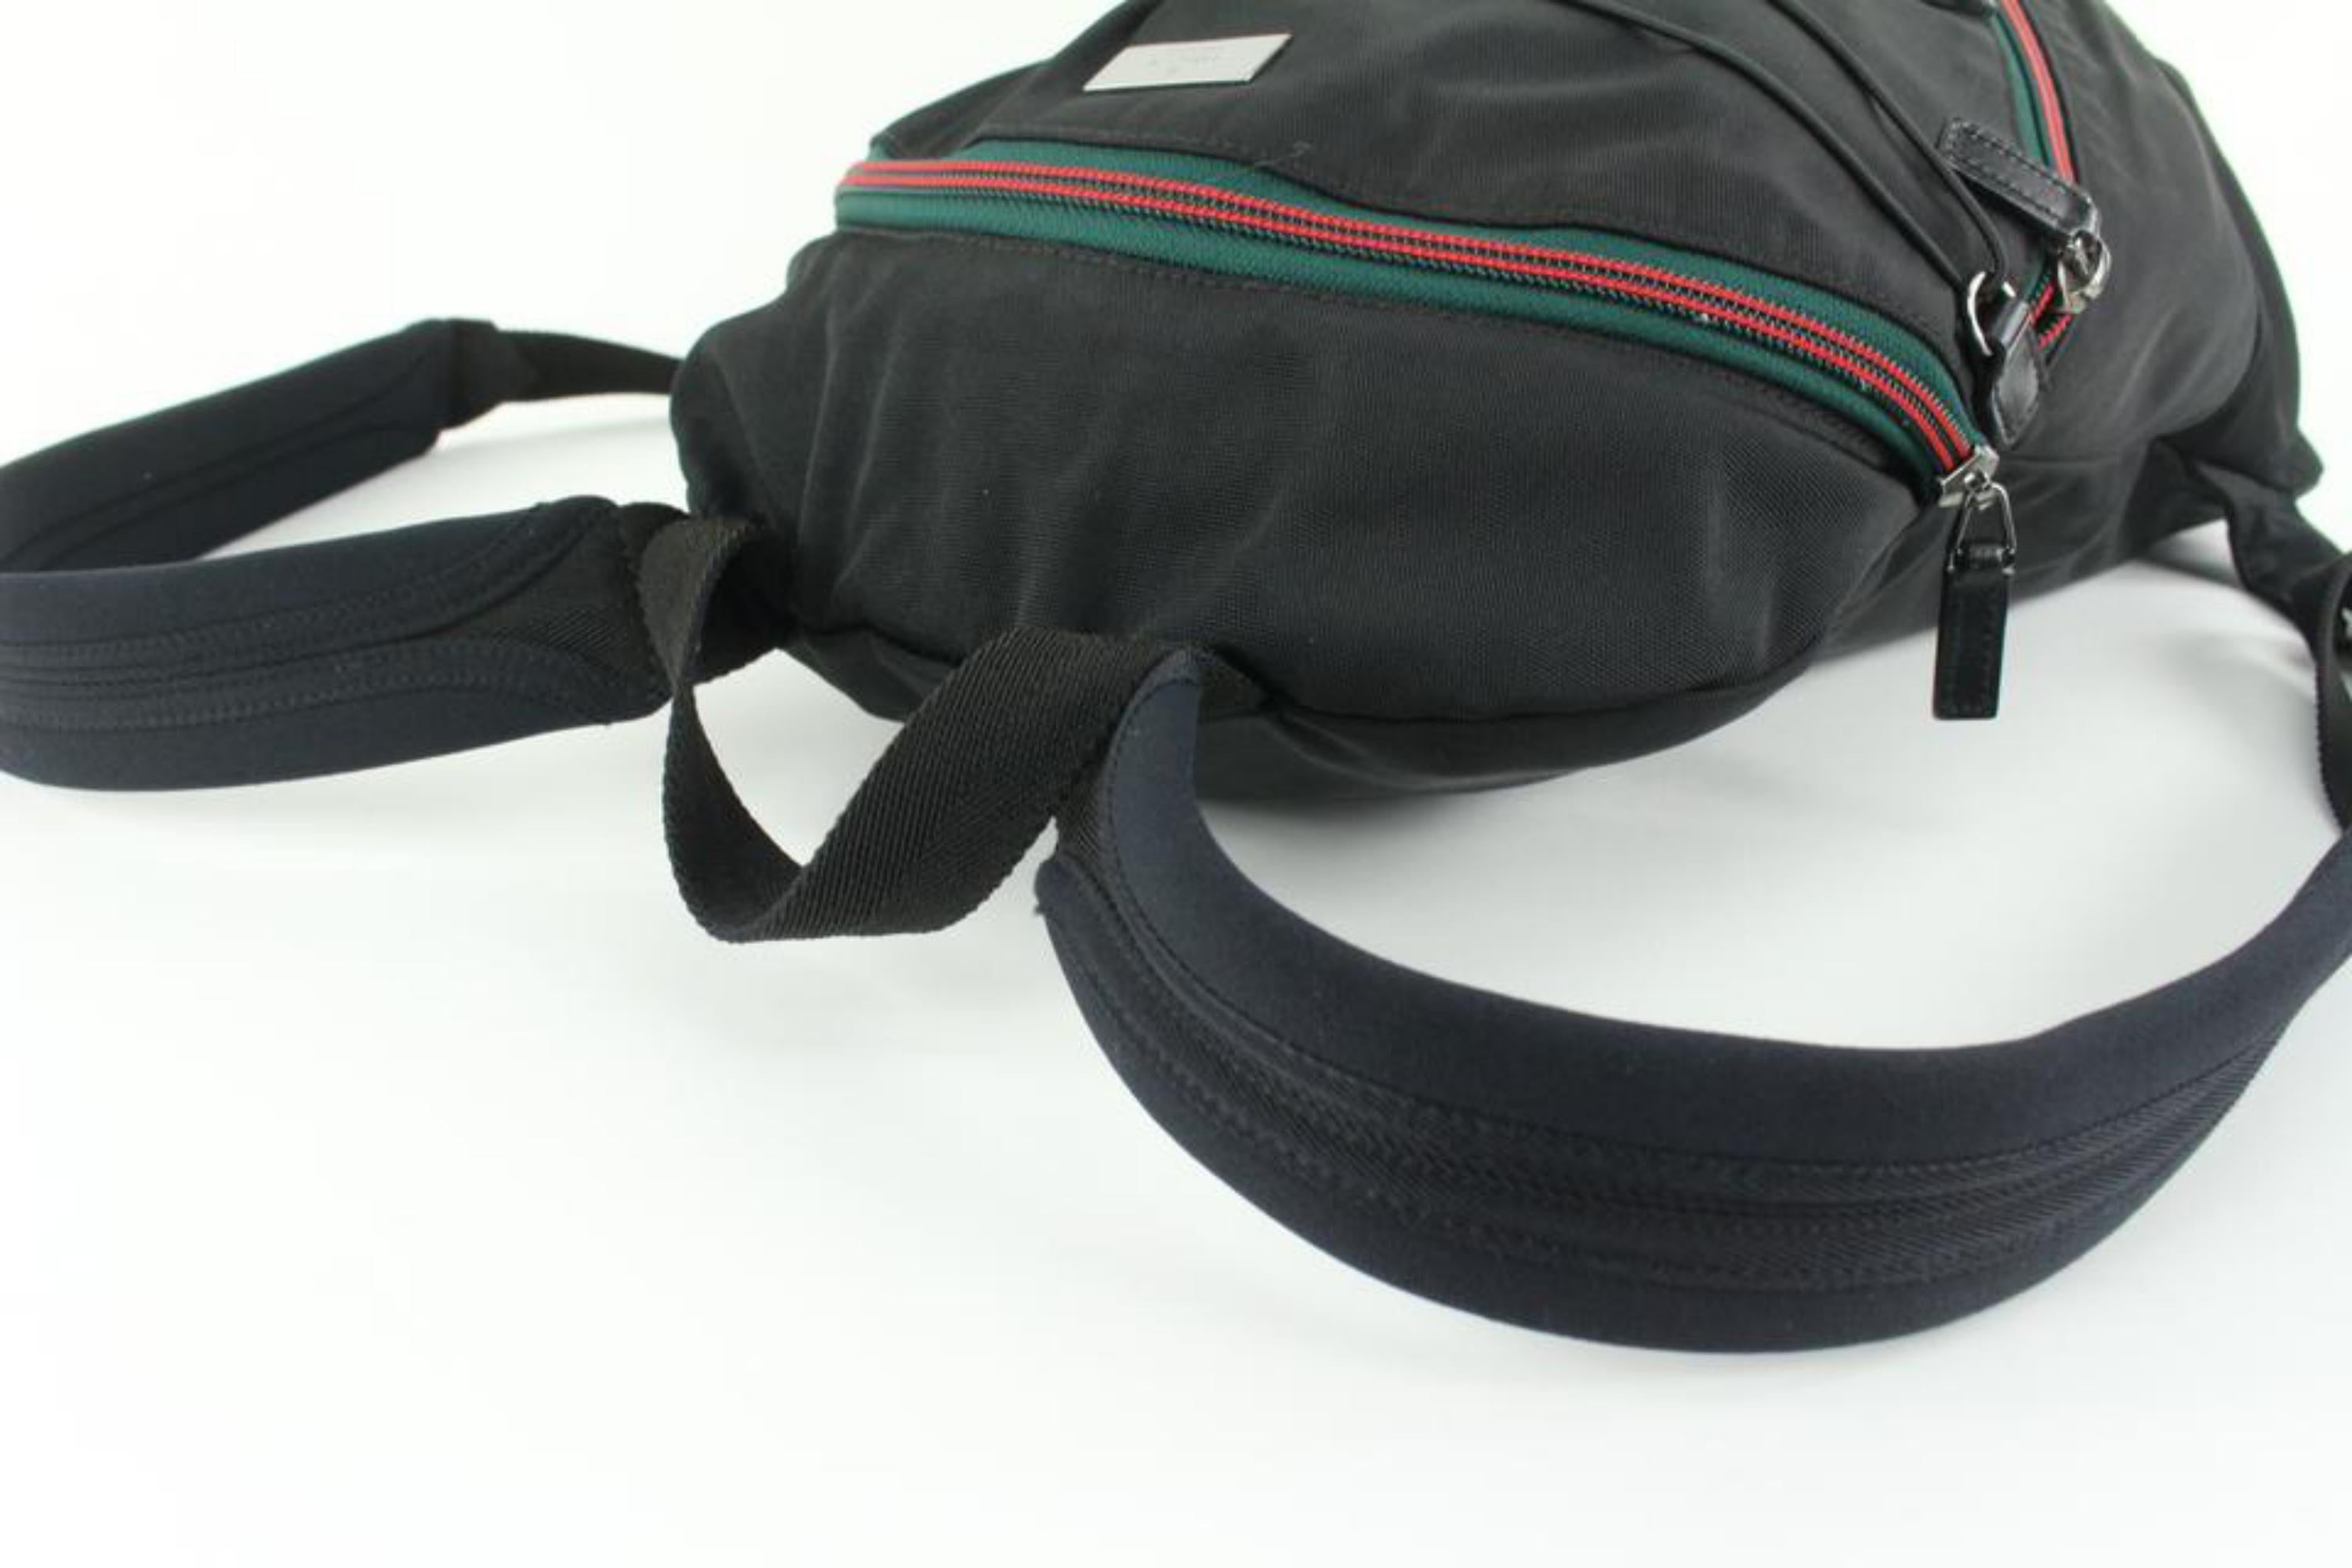 Gucci Black Nylon Web Hiking Backpack 1231g21 1